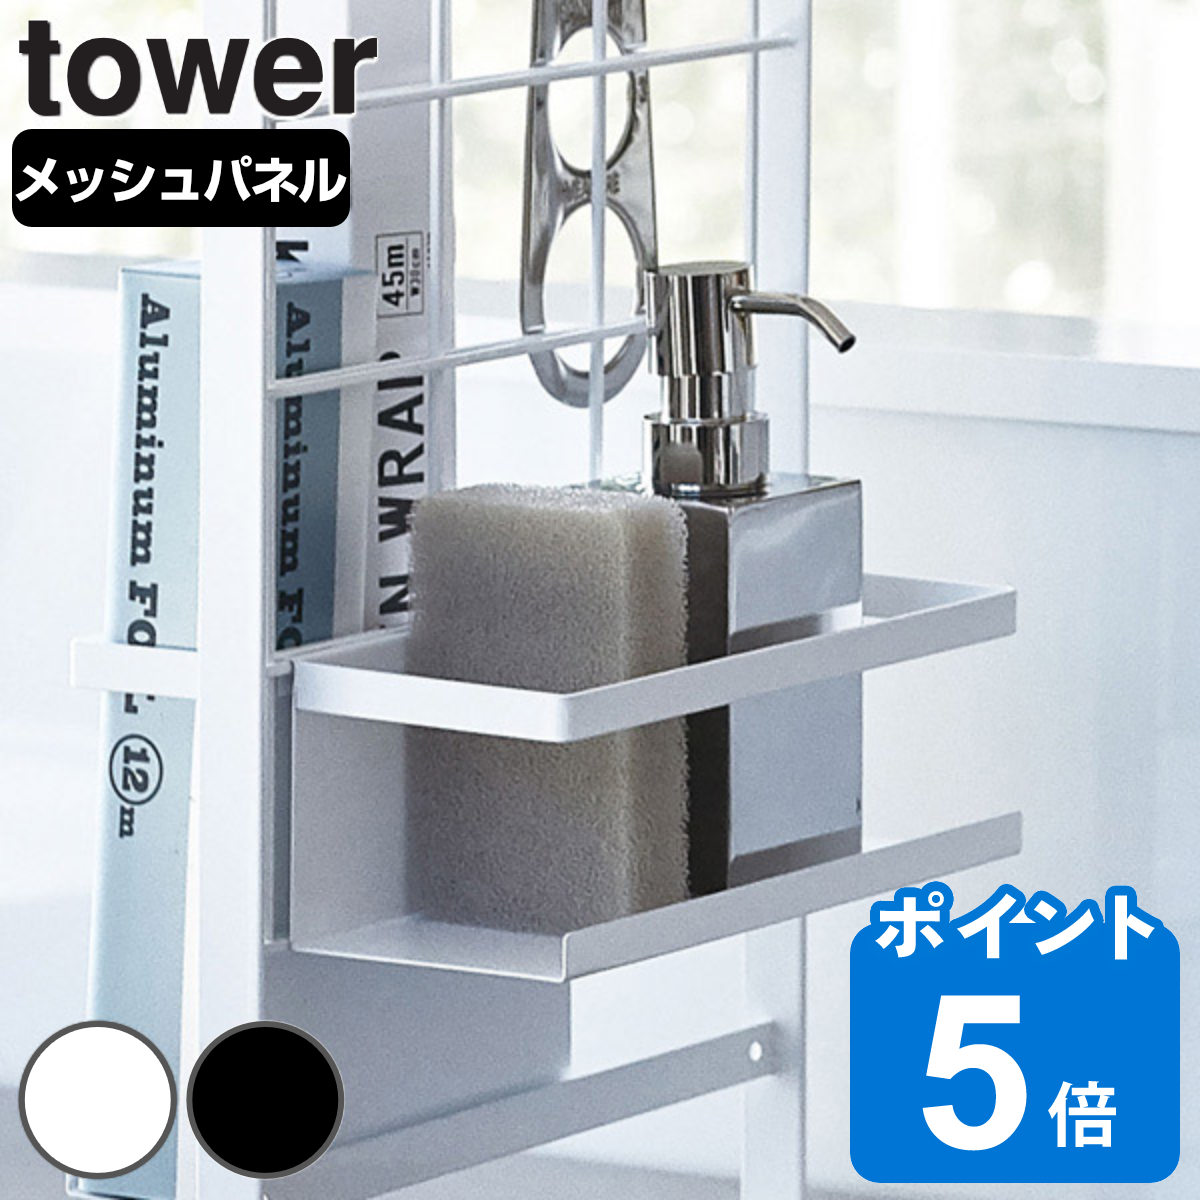 山崎実業 tower シンク上伸縮システムラック用 ボトルラック タワー 対応パーツ